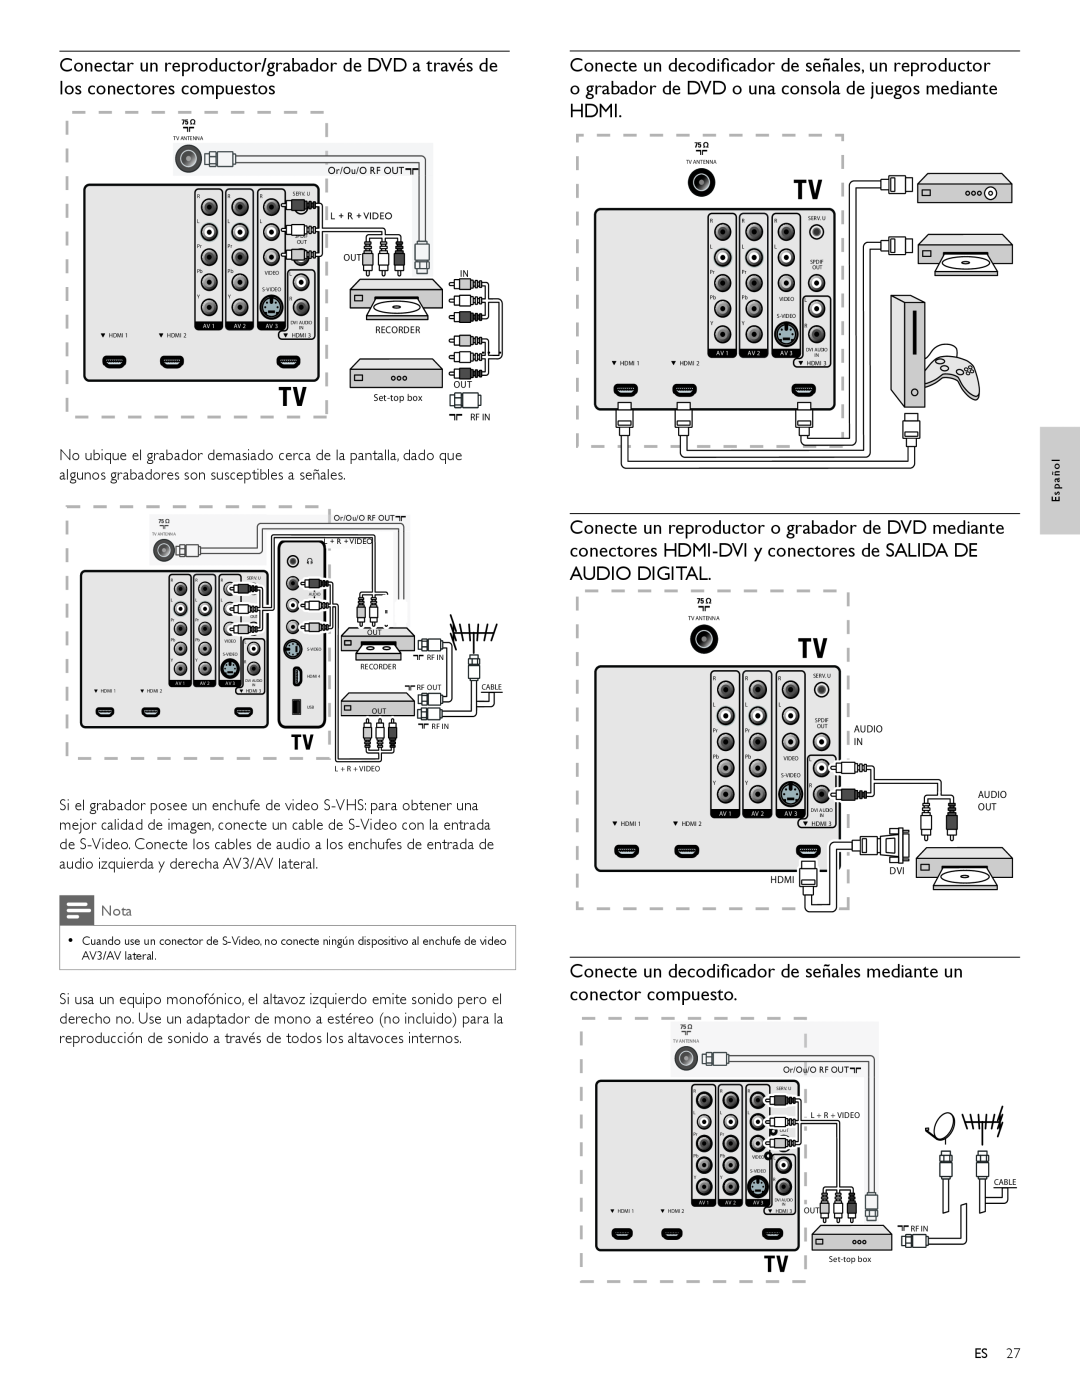 Magnavox 47MF439B user manual Conecte un decodiﬁcador de señales mediante un conector compuesto 